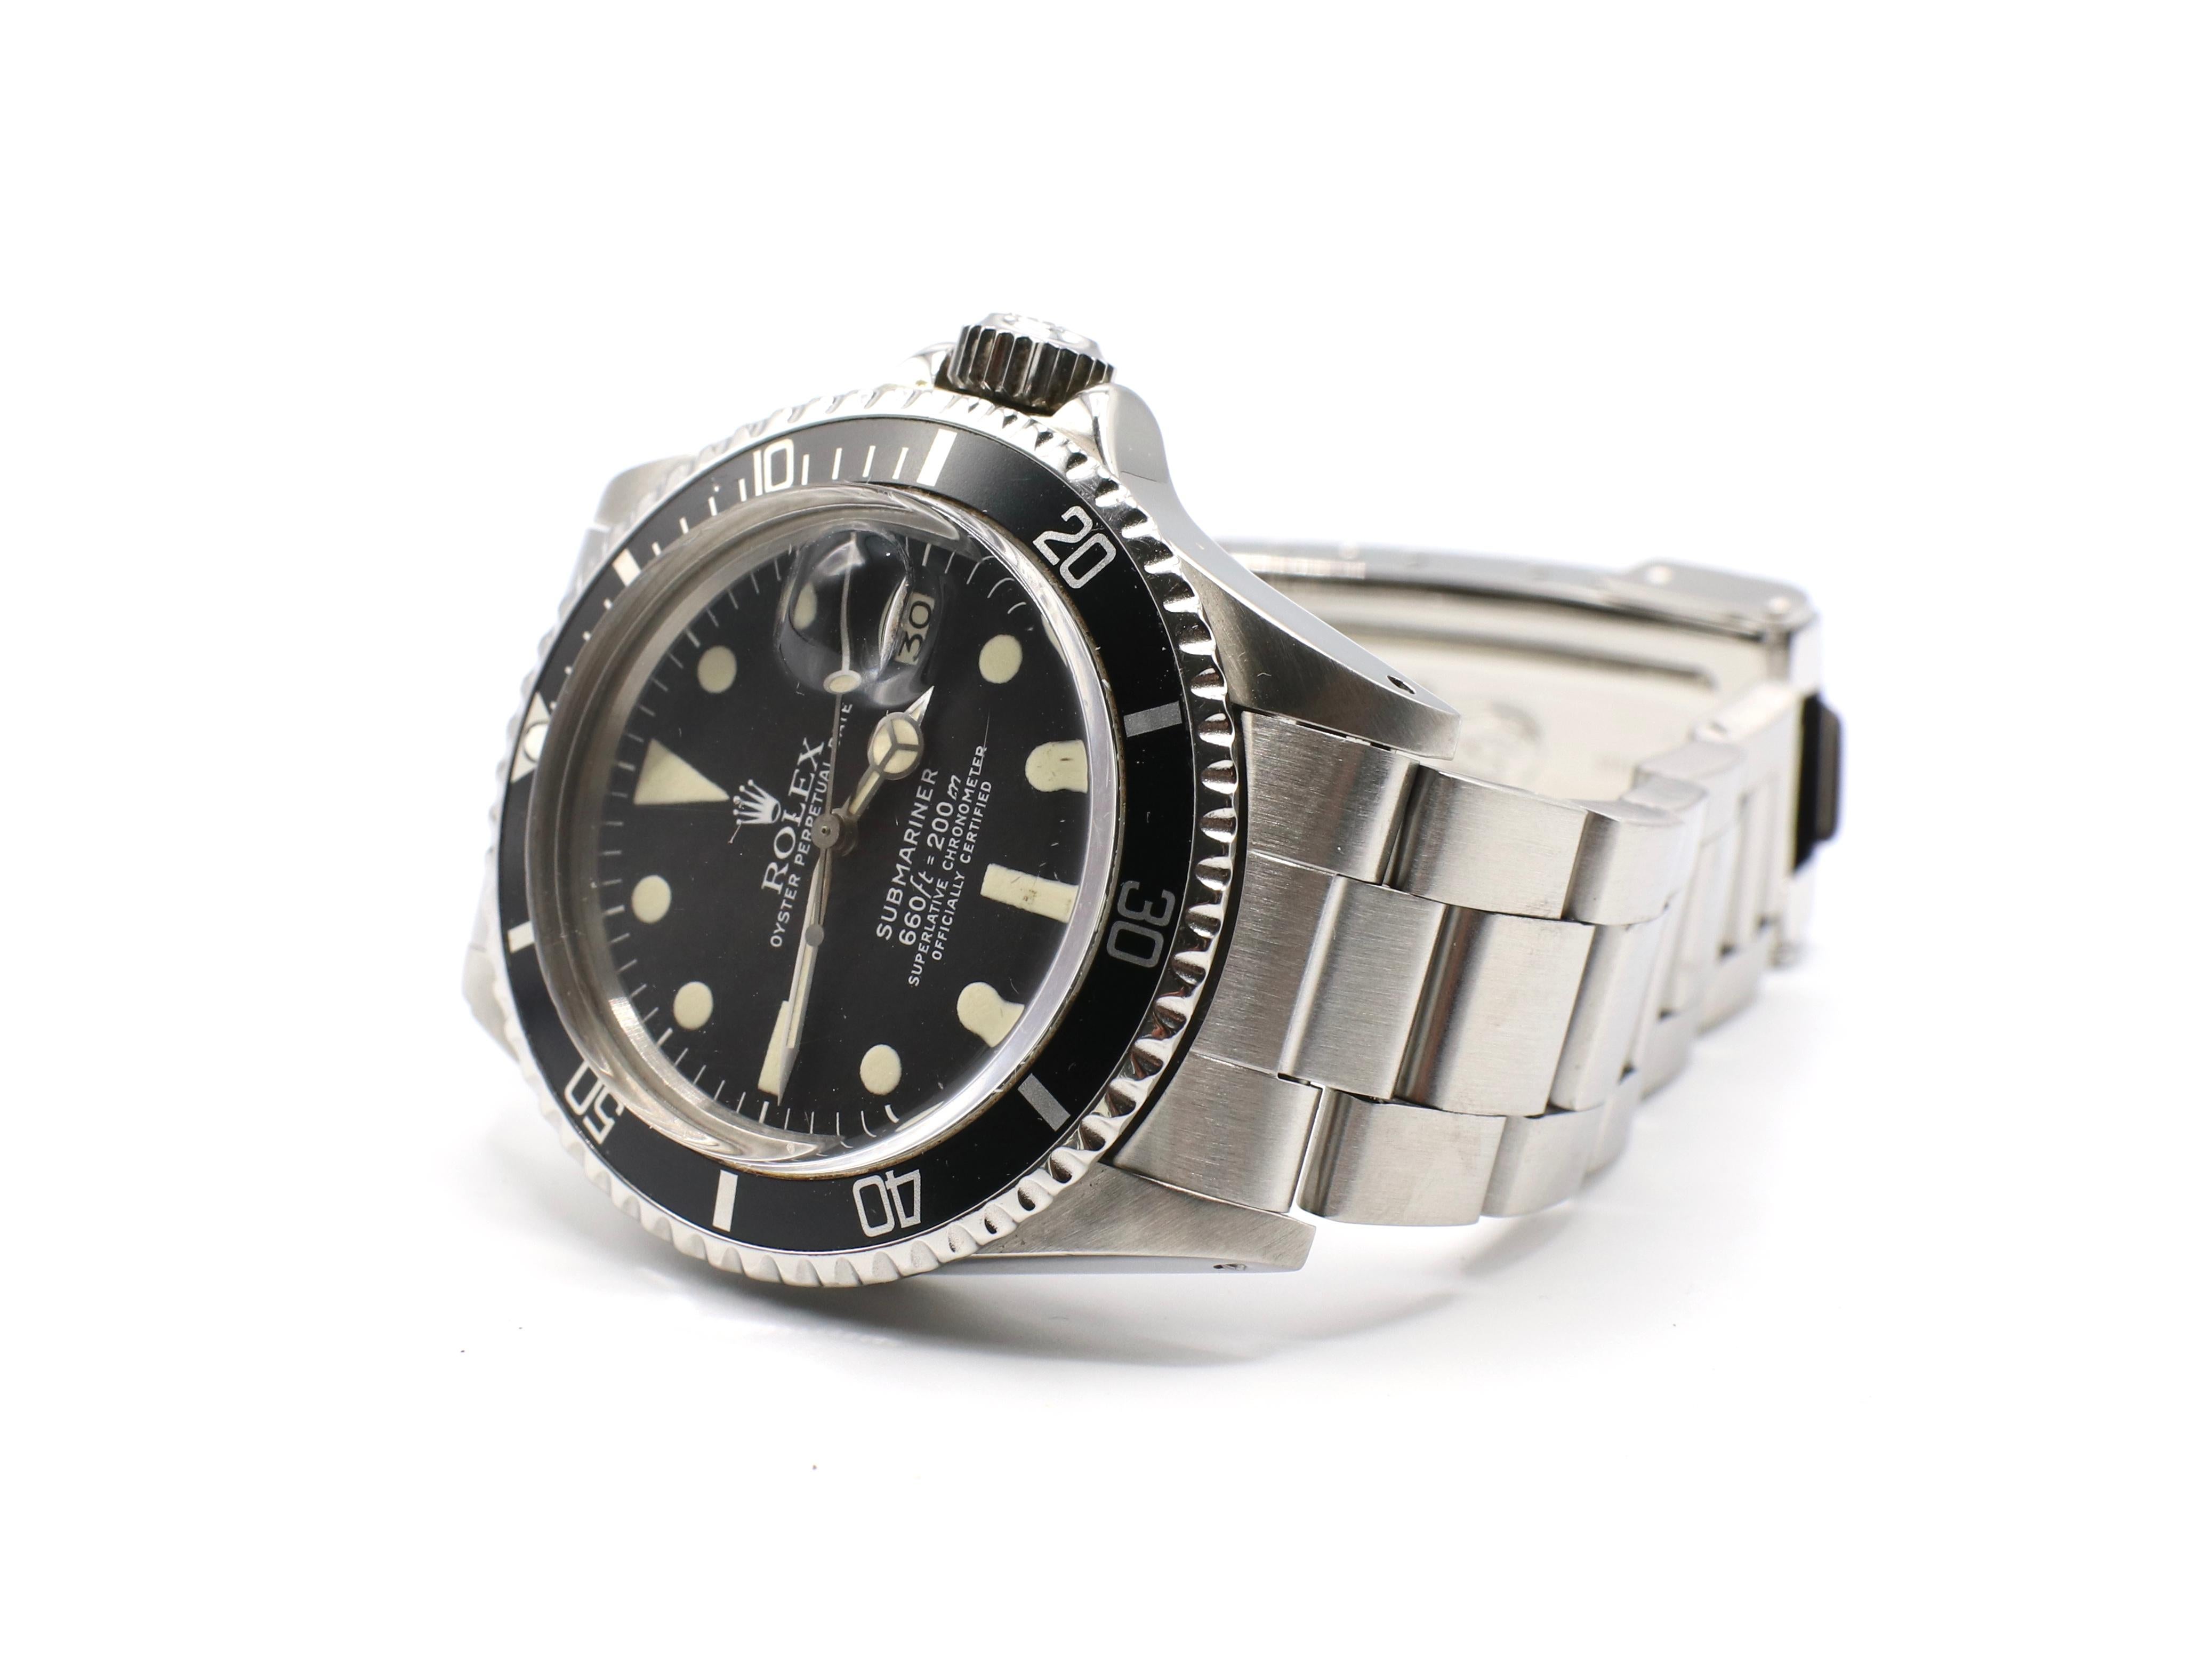 Vintage Rolex Submariner 1680 Stainless Steel Watch, circa 1979 1